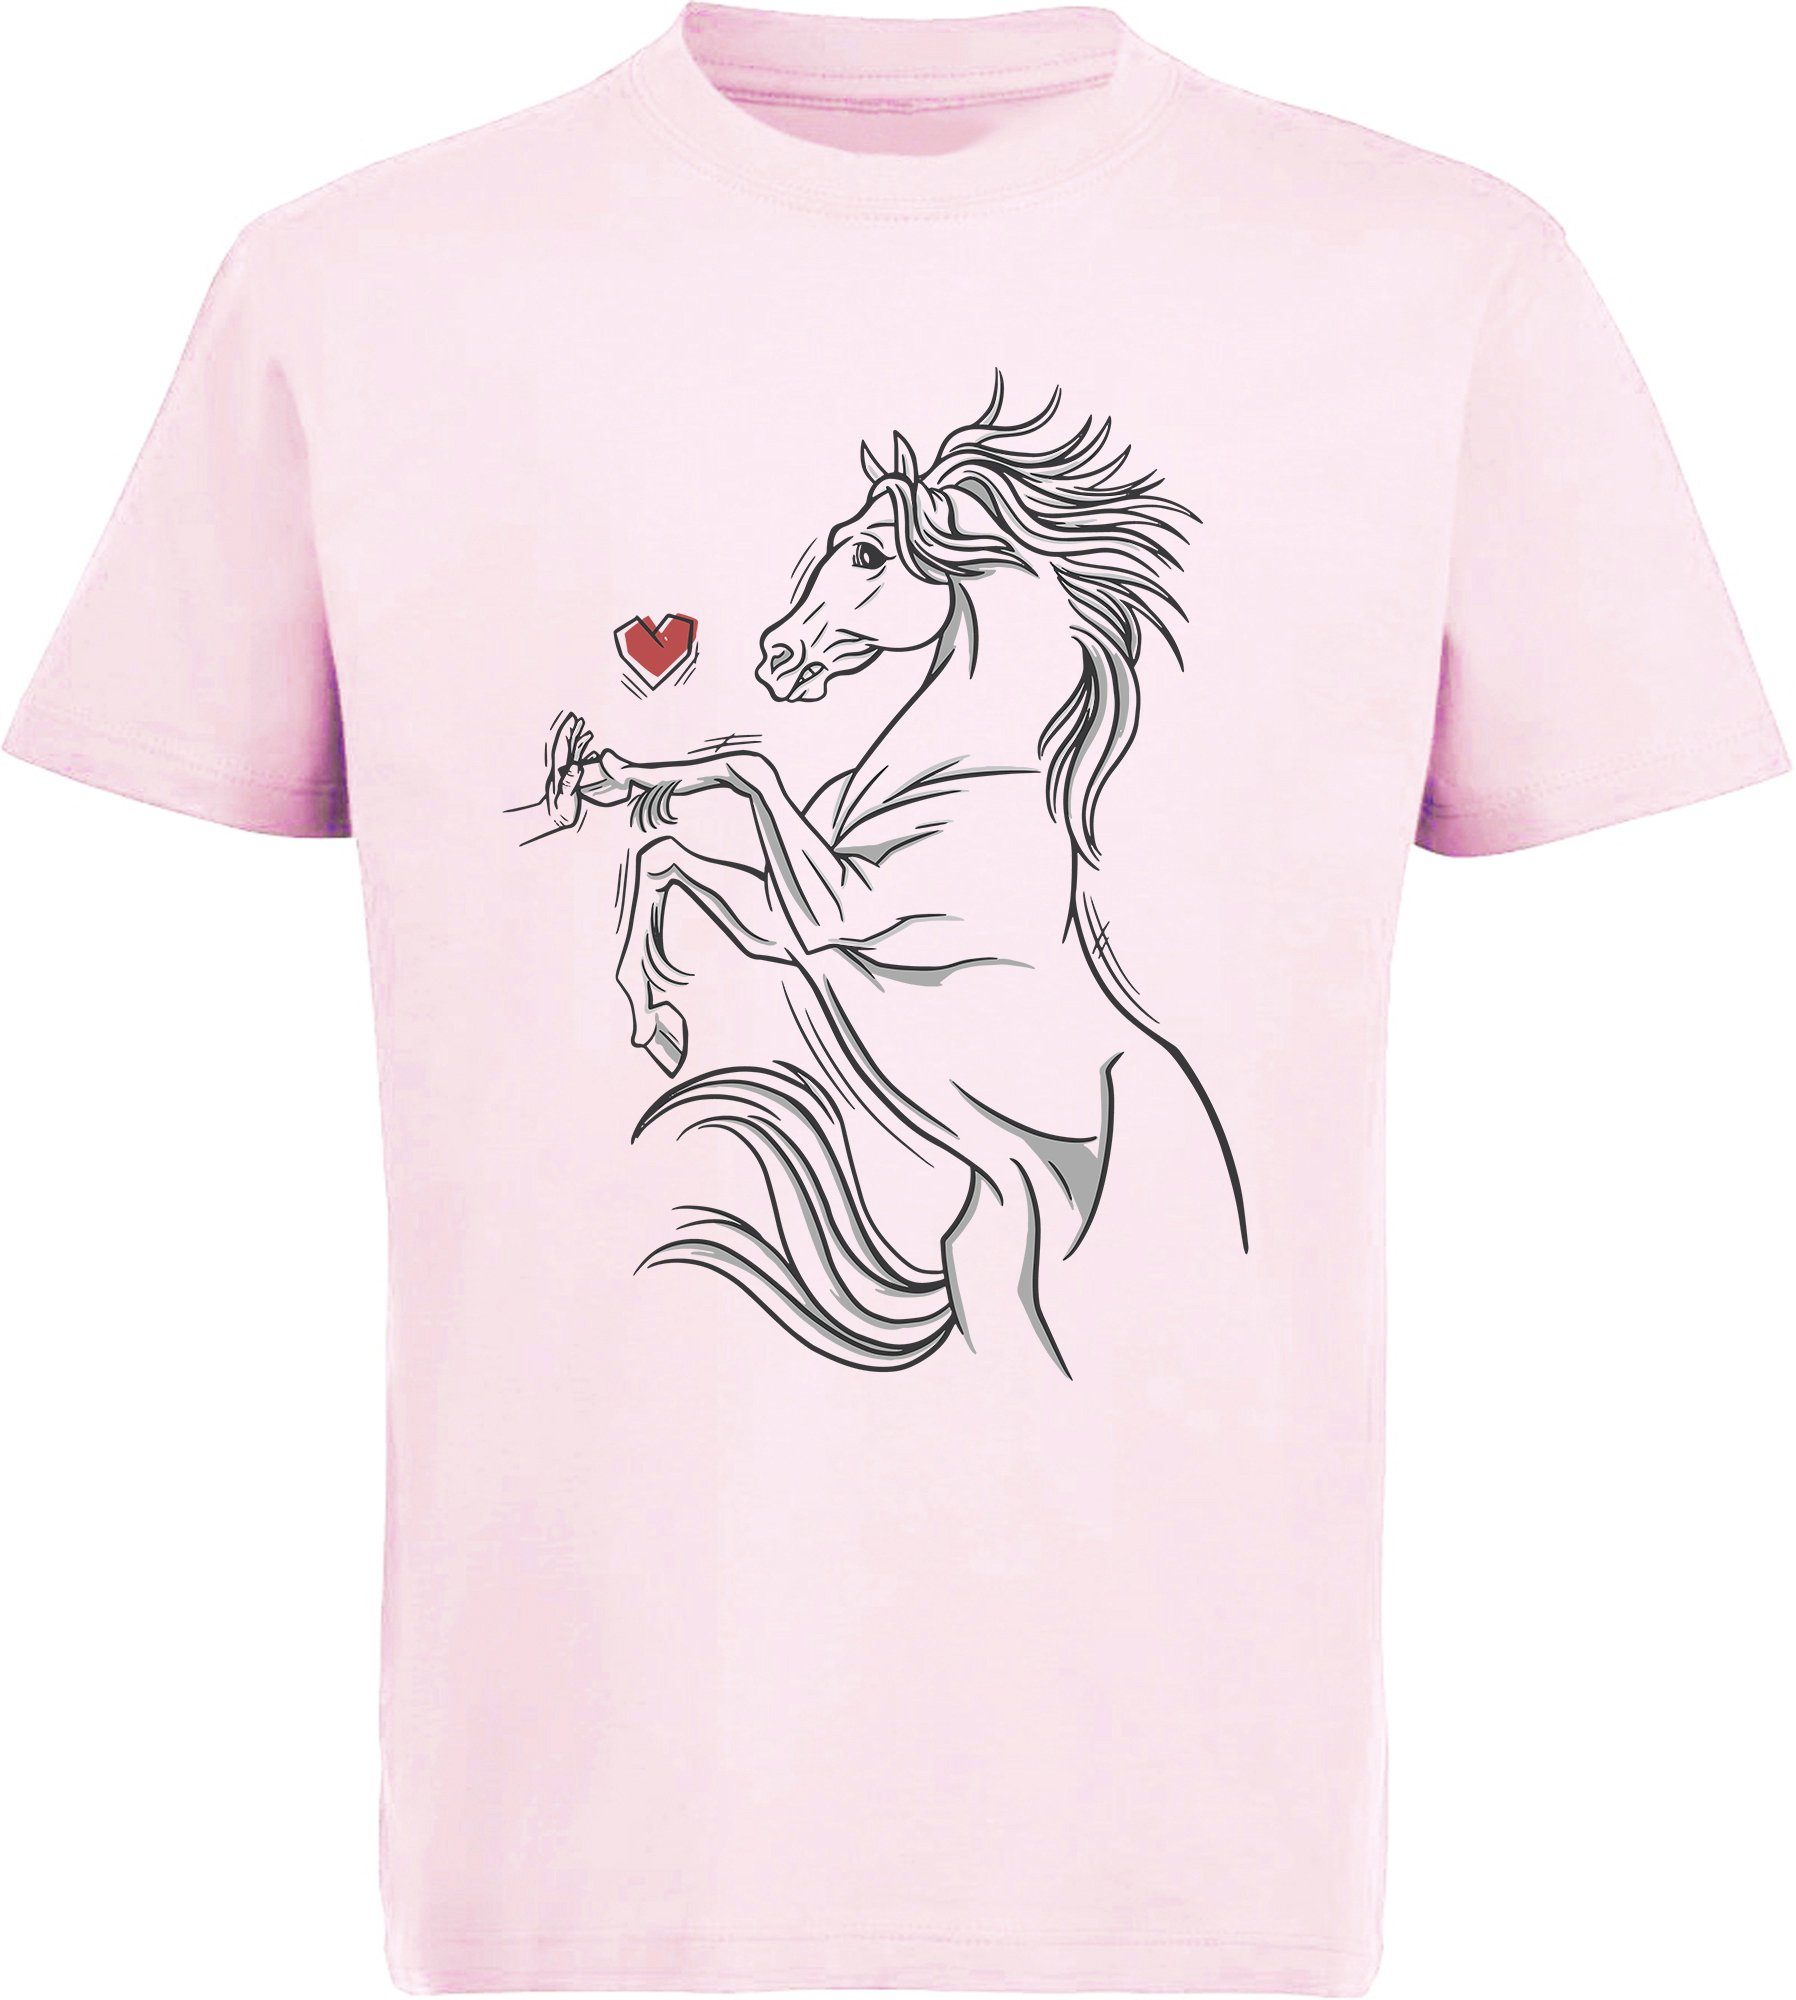 MyDesign24 Print-Shirt bedrucktes Mädchen T-Shirt Pferd das eine Hand berührt Baumwollshirt mit Aufdruck, i159 rosa